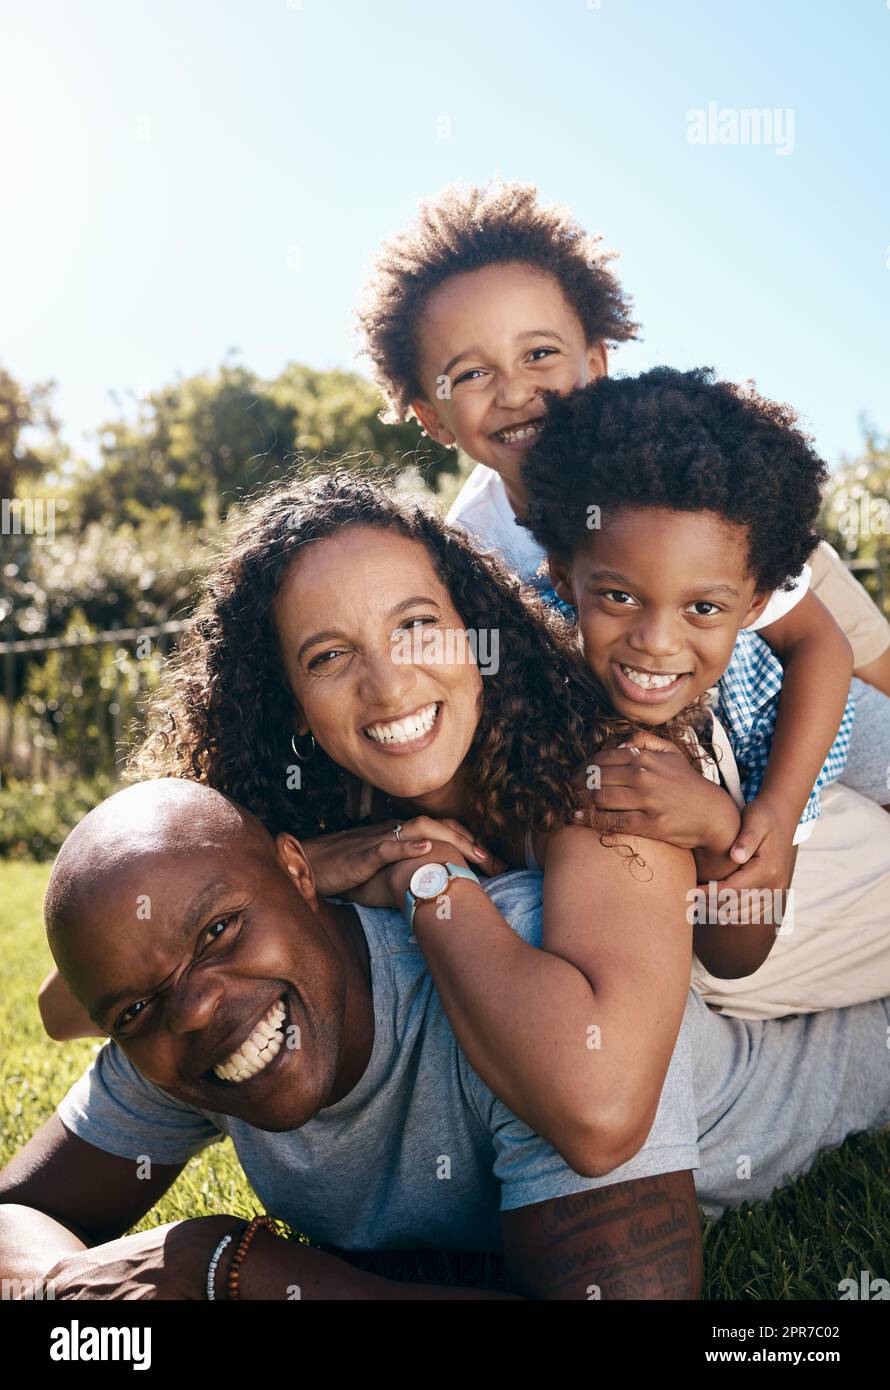 Eine glückliche afroamerikanische Familie von vier Personen, die übereinander liegen, während sie Spaß haben und zusammen in der Sonne spielen. Sorgenfreie Mutter und zwei Kinder stapelten sich auf Vater, während sie im Park eine Beziehung knüpften Stockfoto